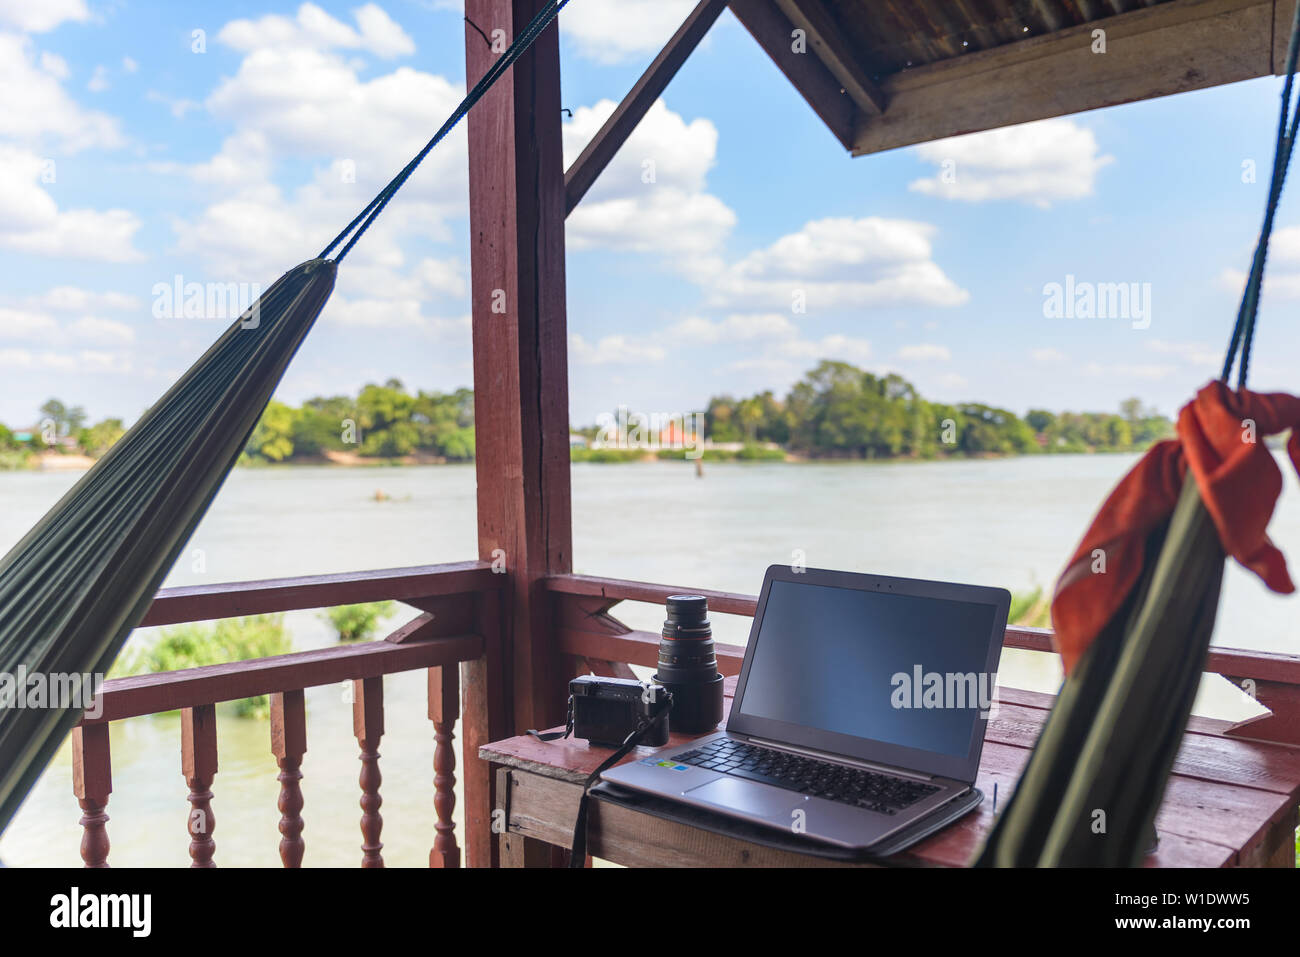 Arbeiten mit Laptop auf dem Balkon aus Holz in Ferienort mit hängenden Hängematte auf dem Mekong, Laos. Konzept der millenials rund um die Welt arbeiten Stockfoto